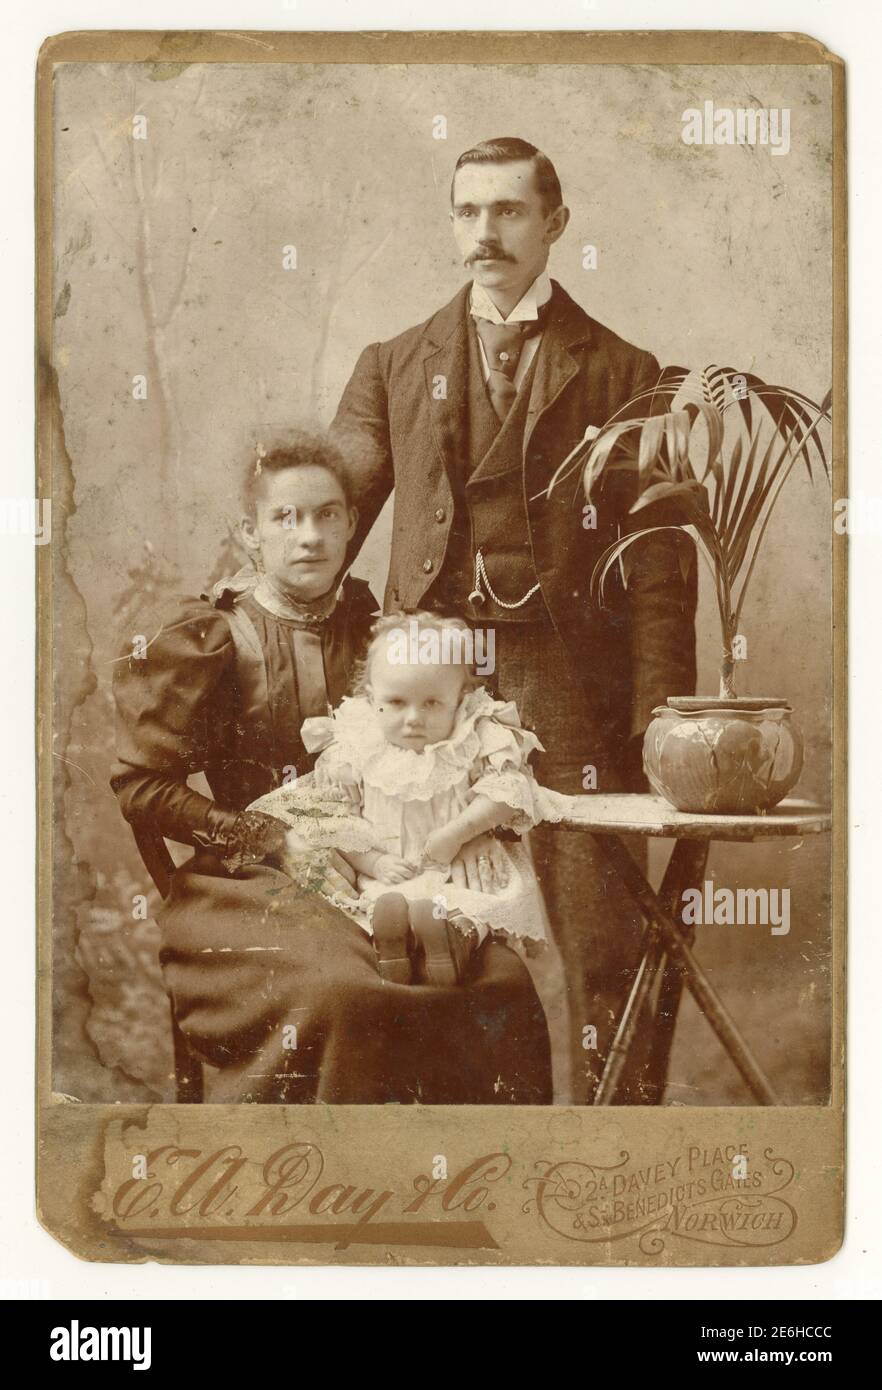 Original antique Victorian Cabinet Card portrait studio avec palmier en pot typique / plante d'intérieur dans un pot. Portrait est de jeune couple attrayant avec leur petite fille. Homme victorien, femme victorienne femme victorienne. La photo est datée de 1895, du studio de E. A. Day & Co. Norwich, Norfolk, U. K Banque D'Images